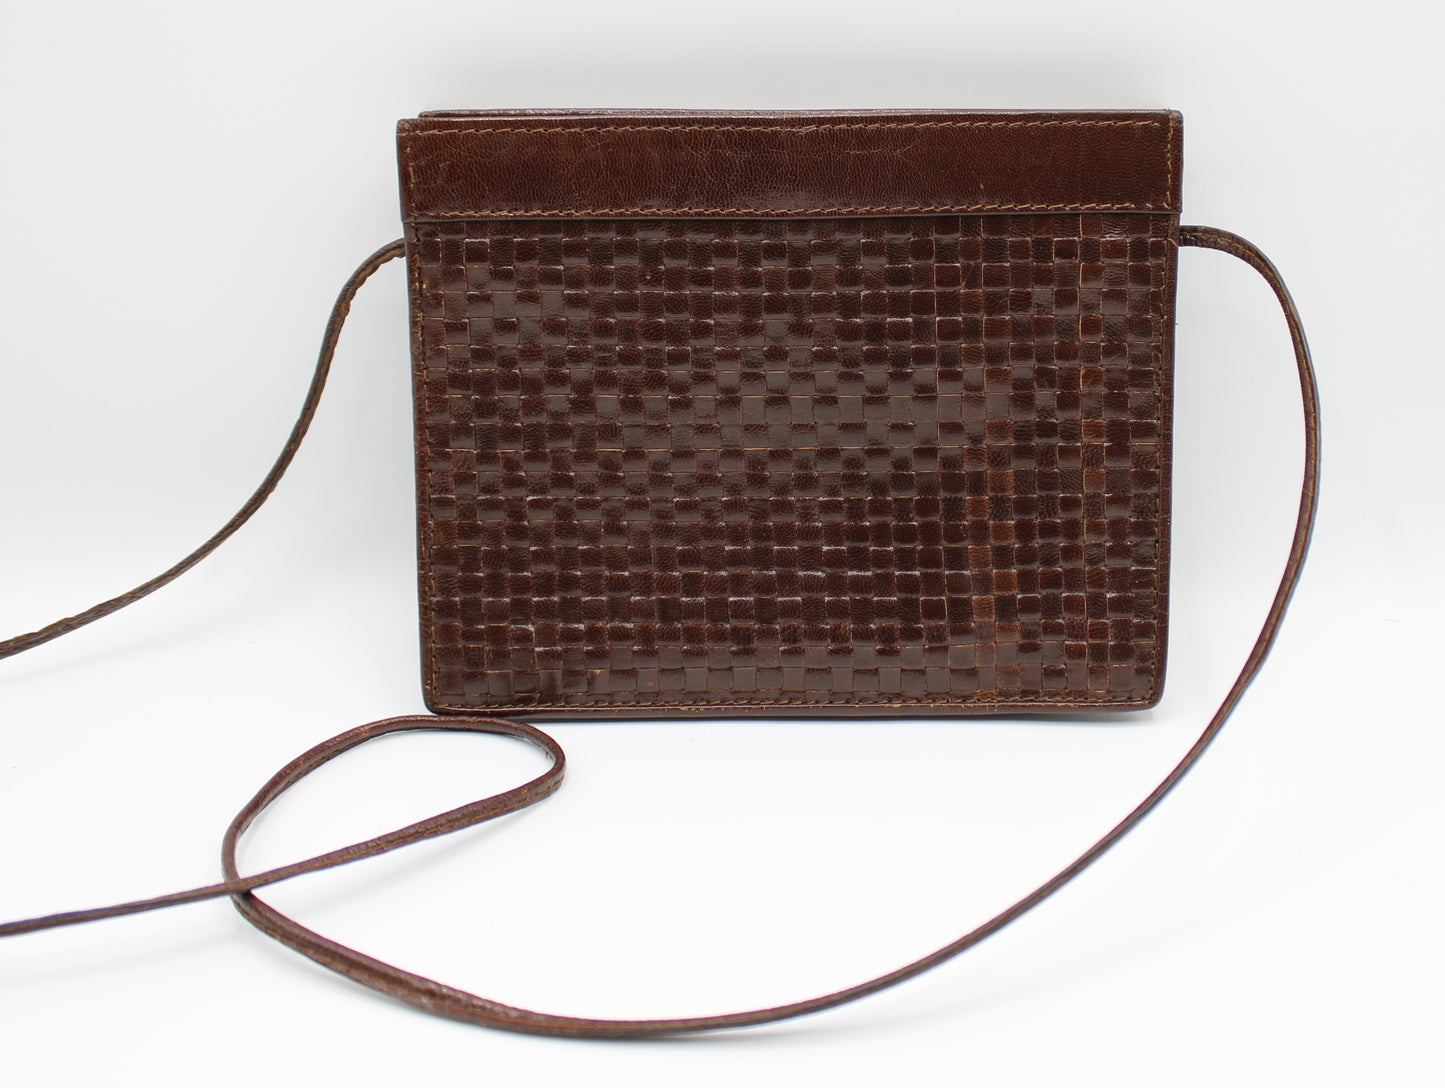 Fendi Woven Brown Leather Framed Bag Vintage